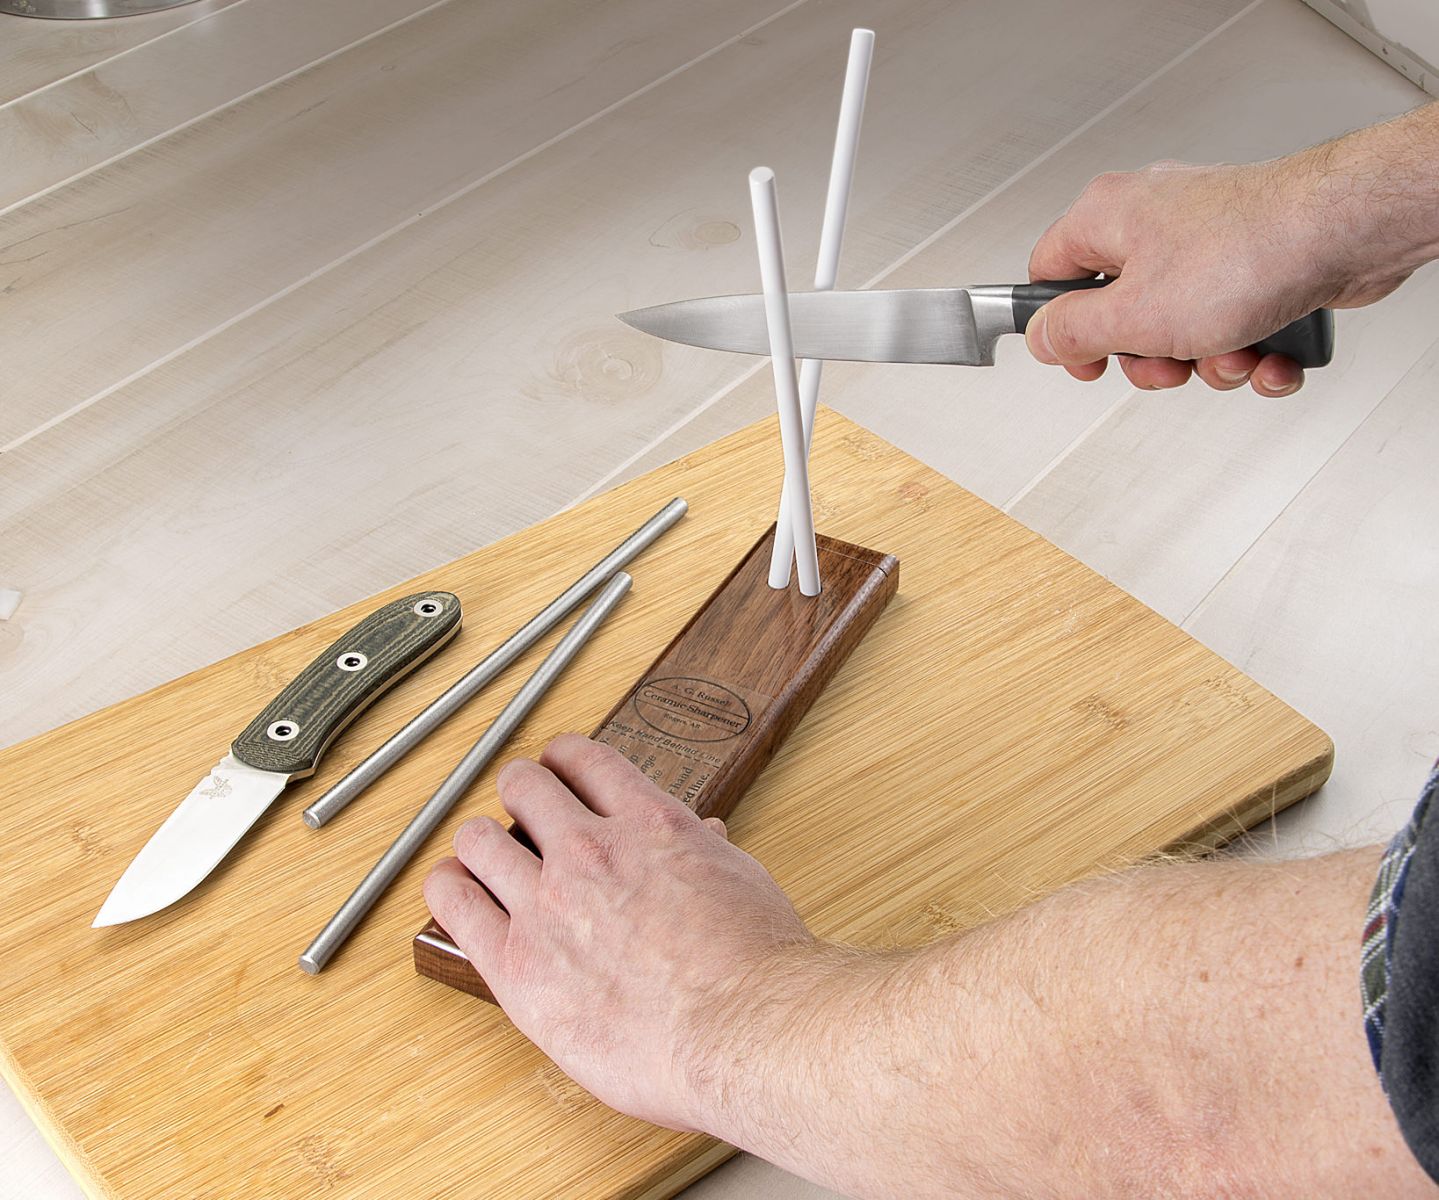 Ceramic Rod Sharpener - Great for Knife Maintenance